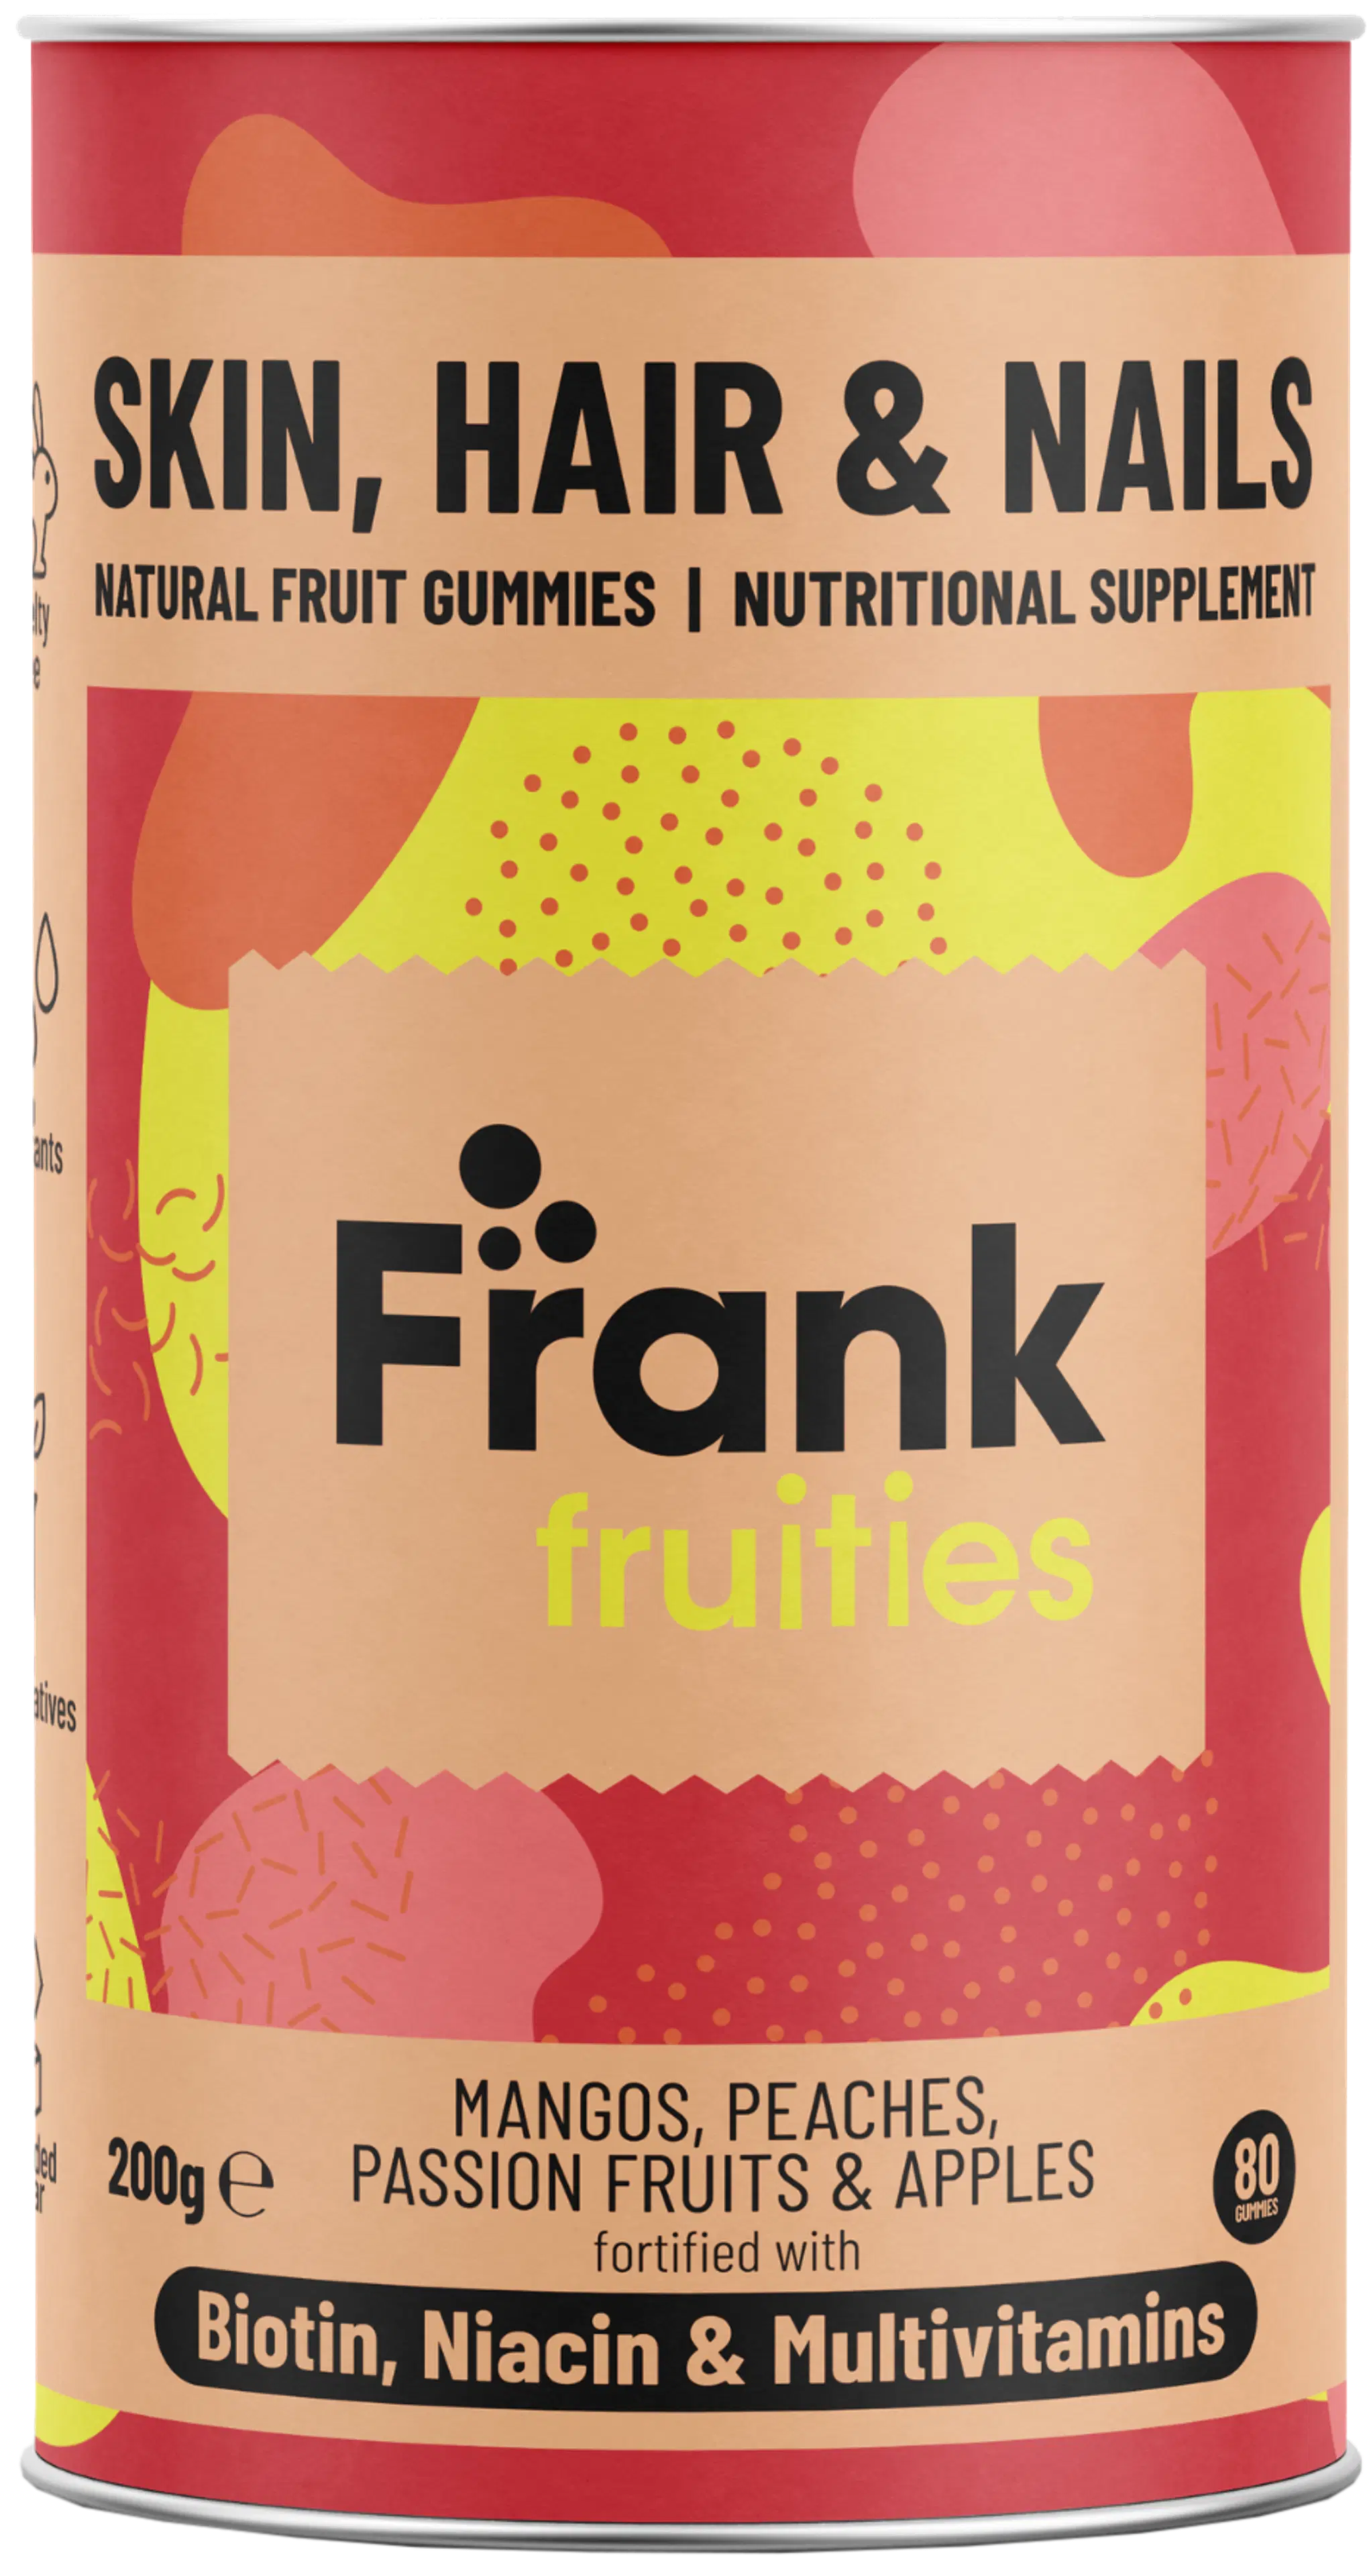 Frank fruities Skin, Hair & Nails monivitamiini-kivennäisvalmiste ravintolisä 80 kpl 200 g